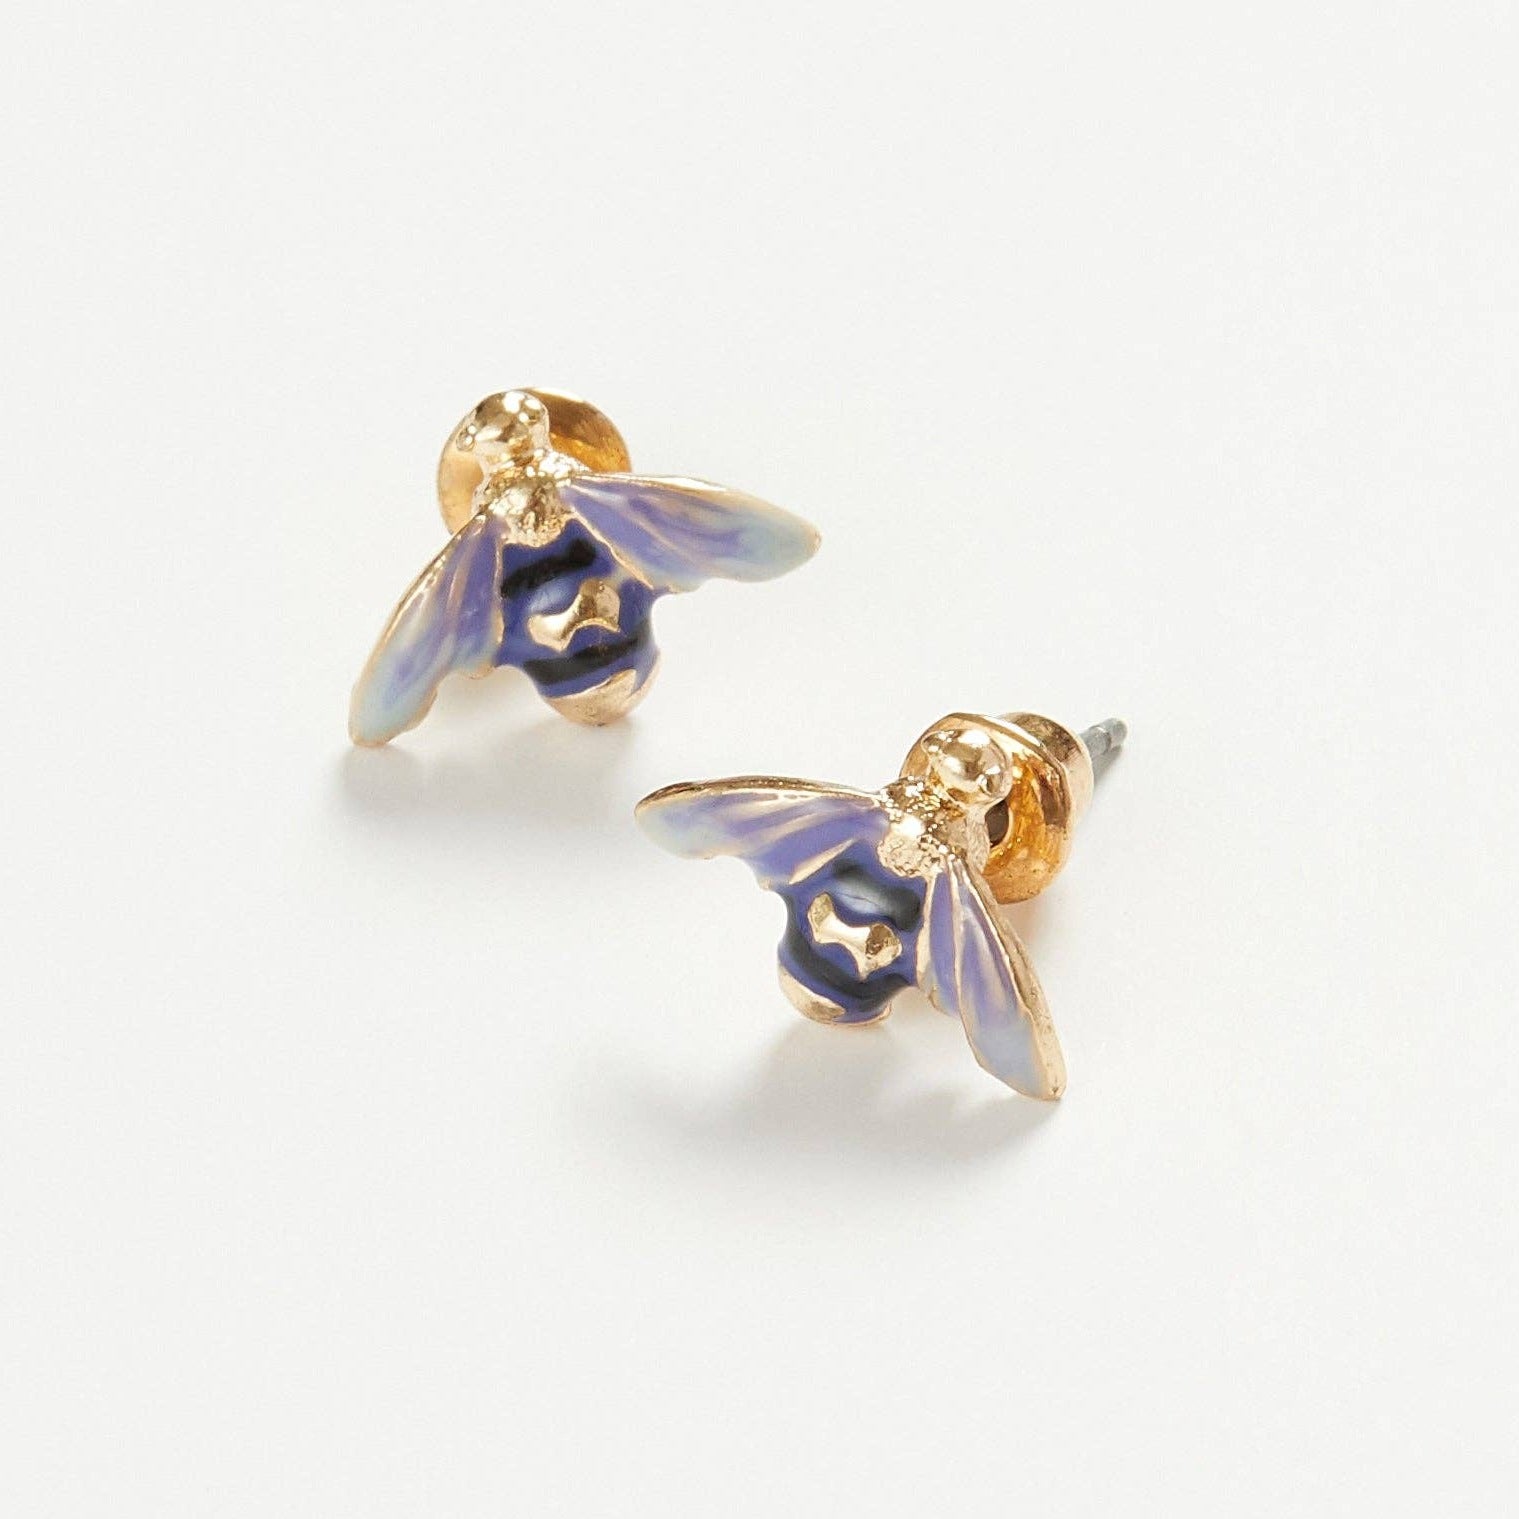 Fable Jewellery - Enamel Bee Earrings